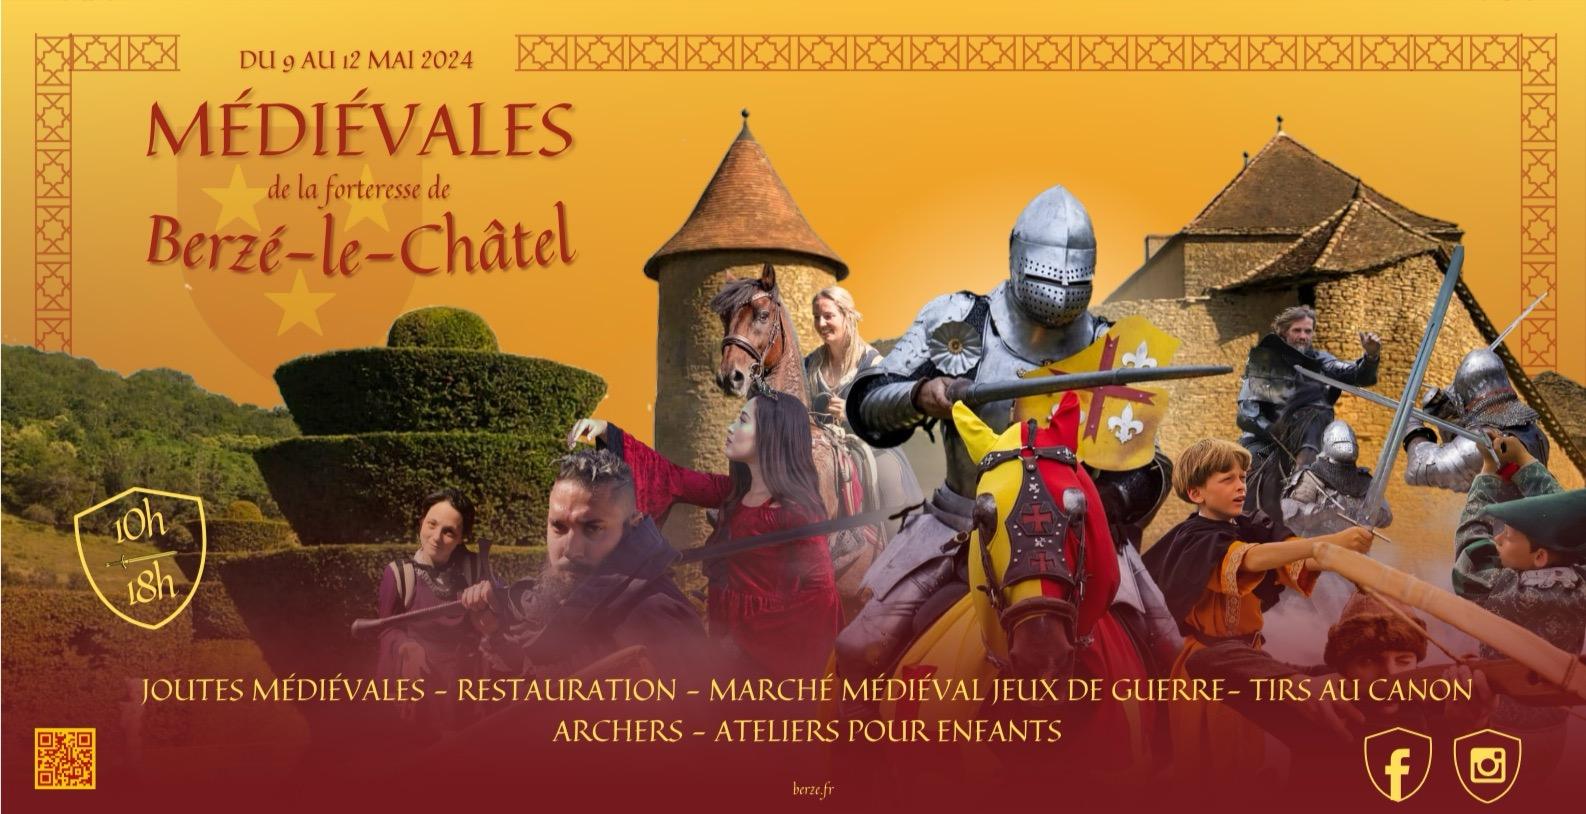 LES MÉDIÉVALES ! Grande fête médiévale à la Forteresse de Berzé-le-Châtel en Sâone-et-Loire 